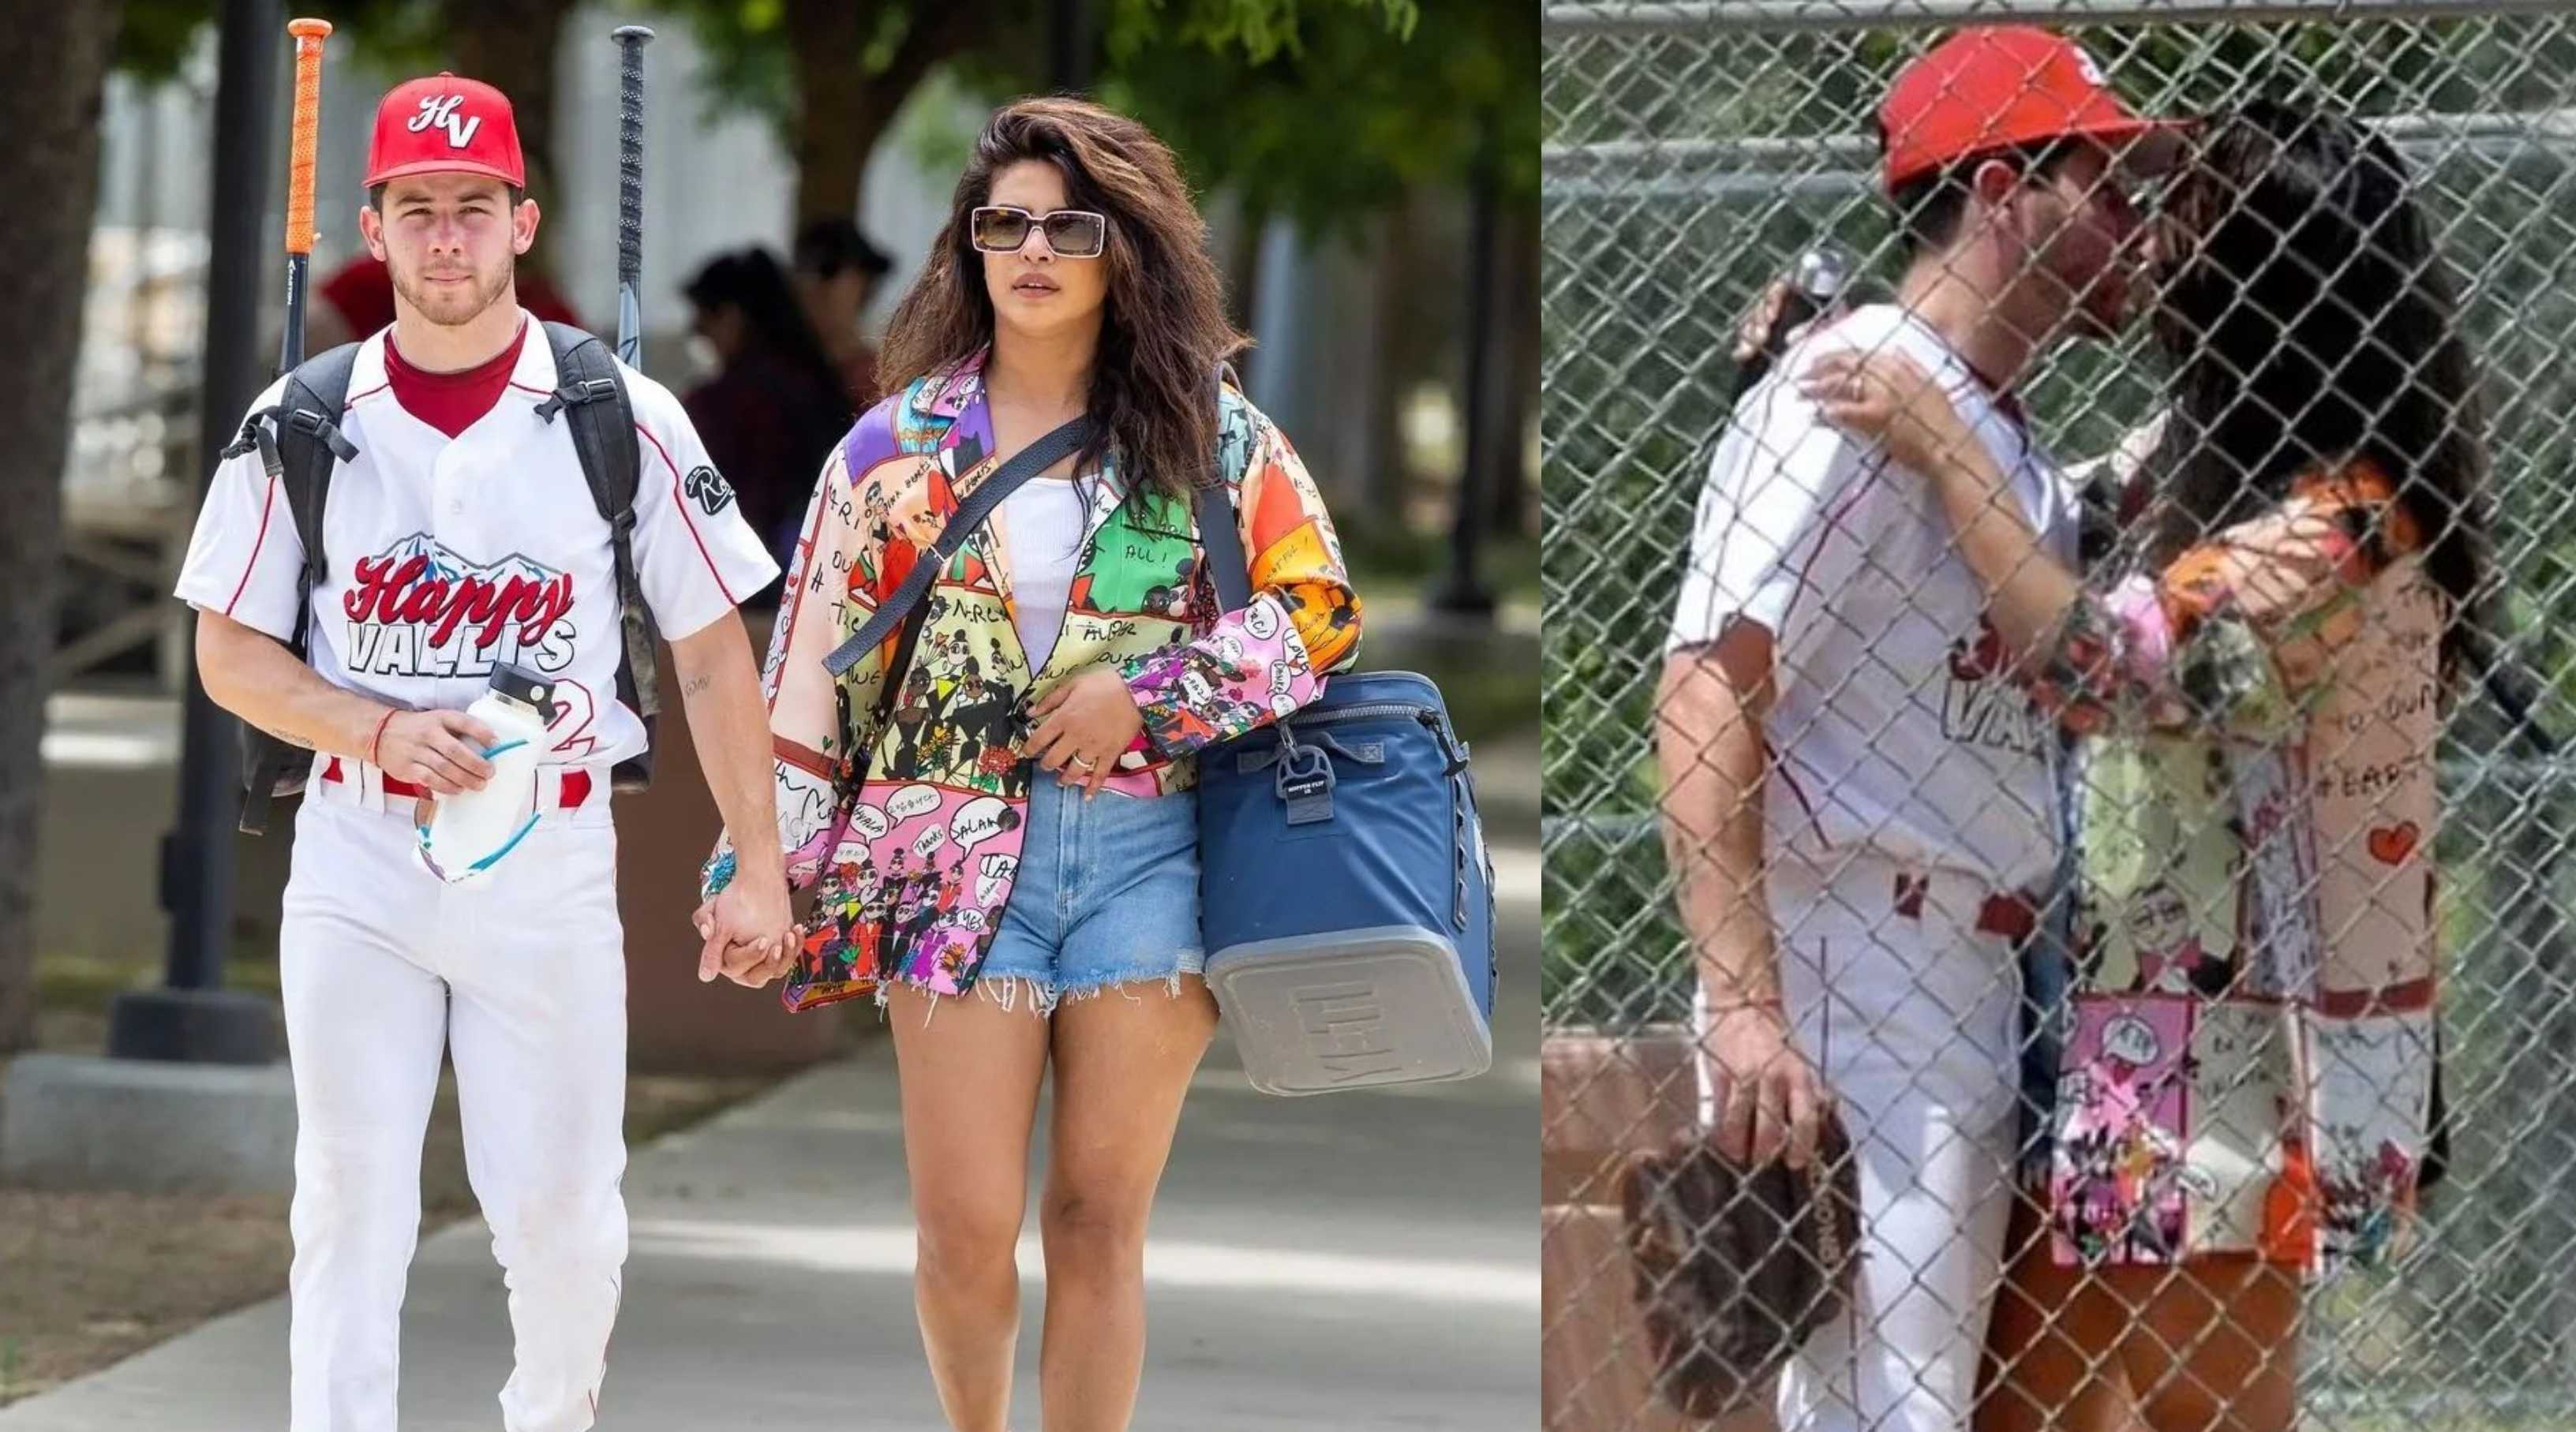 Priyanka Chopra accompanies husband Nick Jonas for his softball game; gives him a good luck kiss